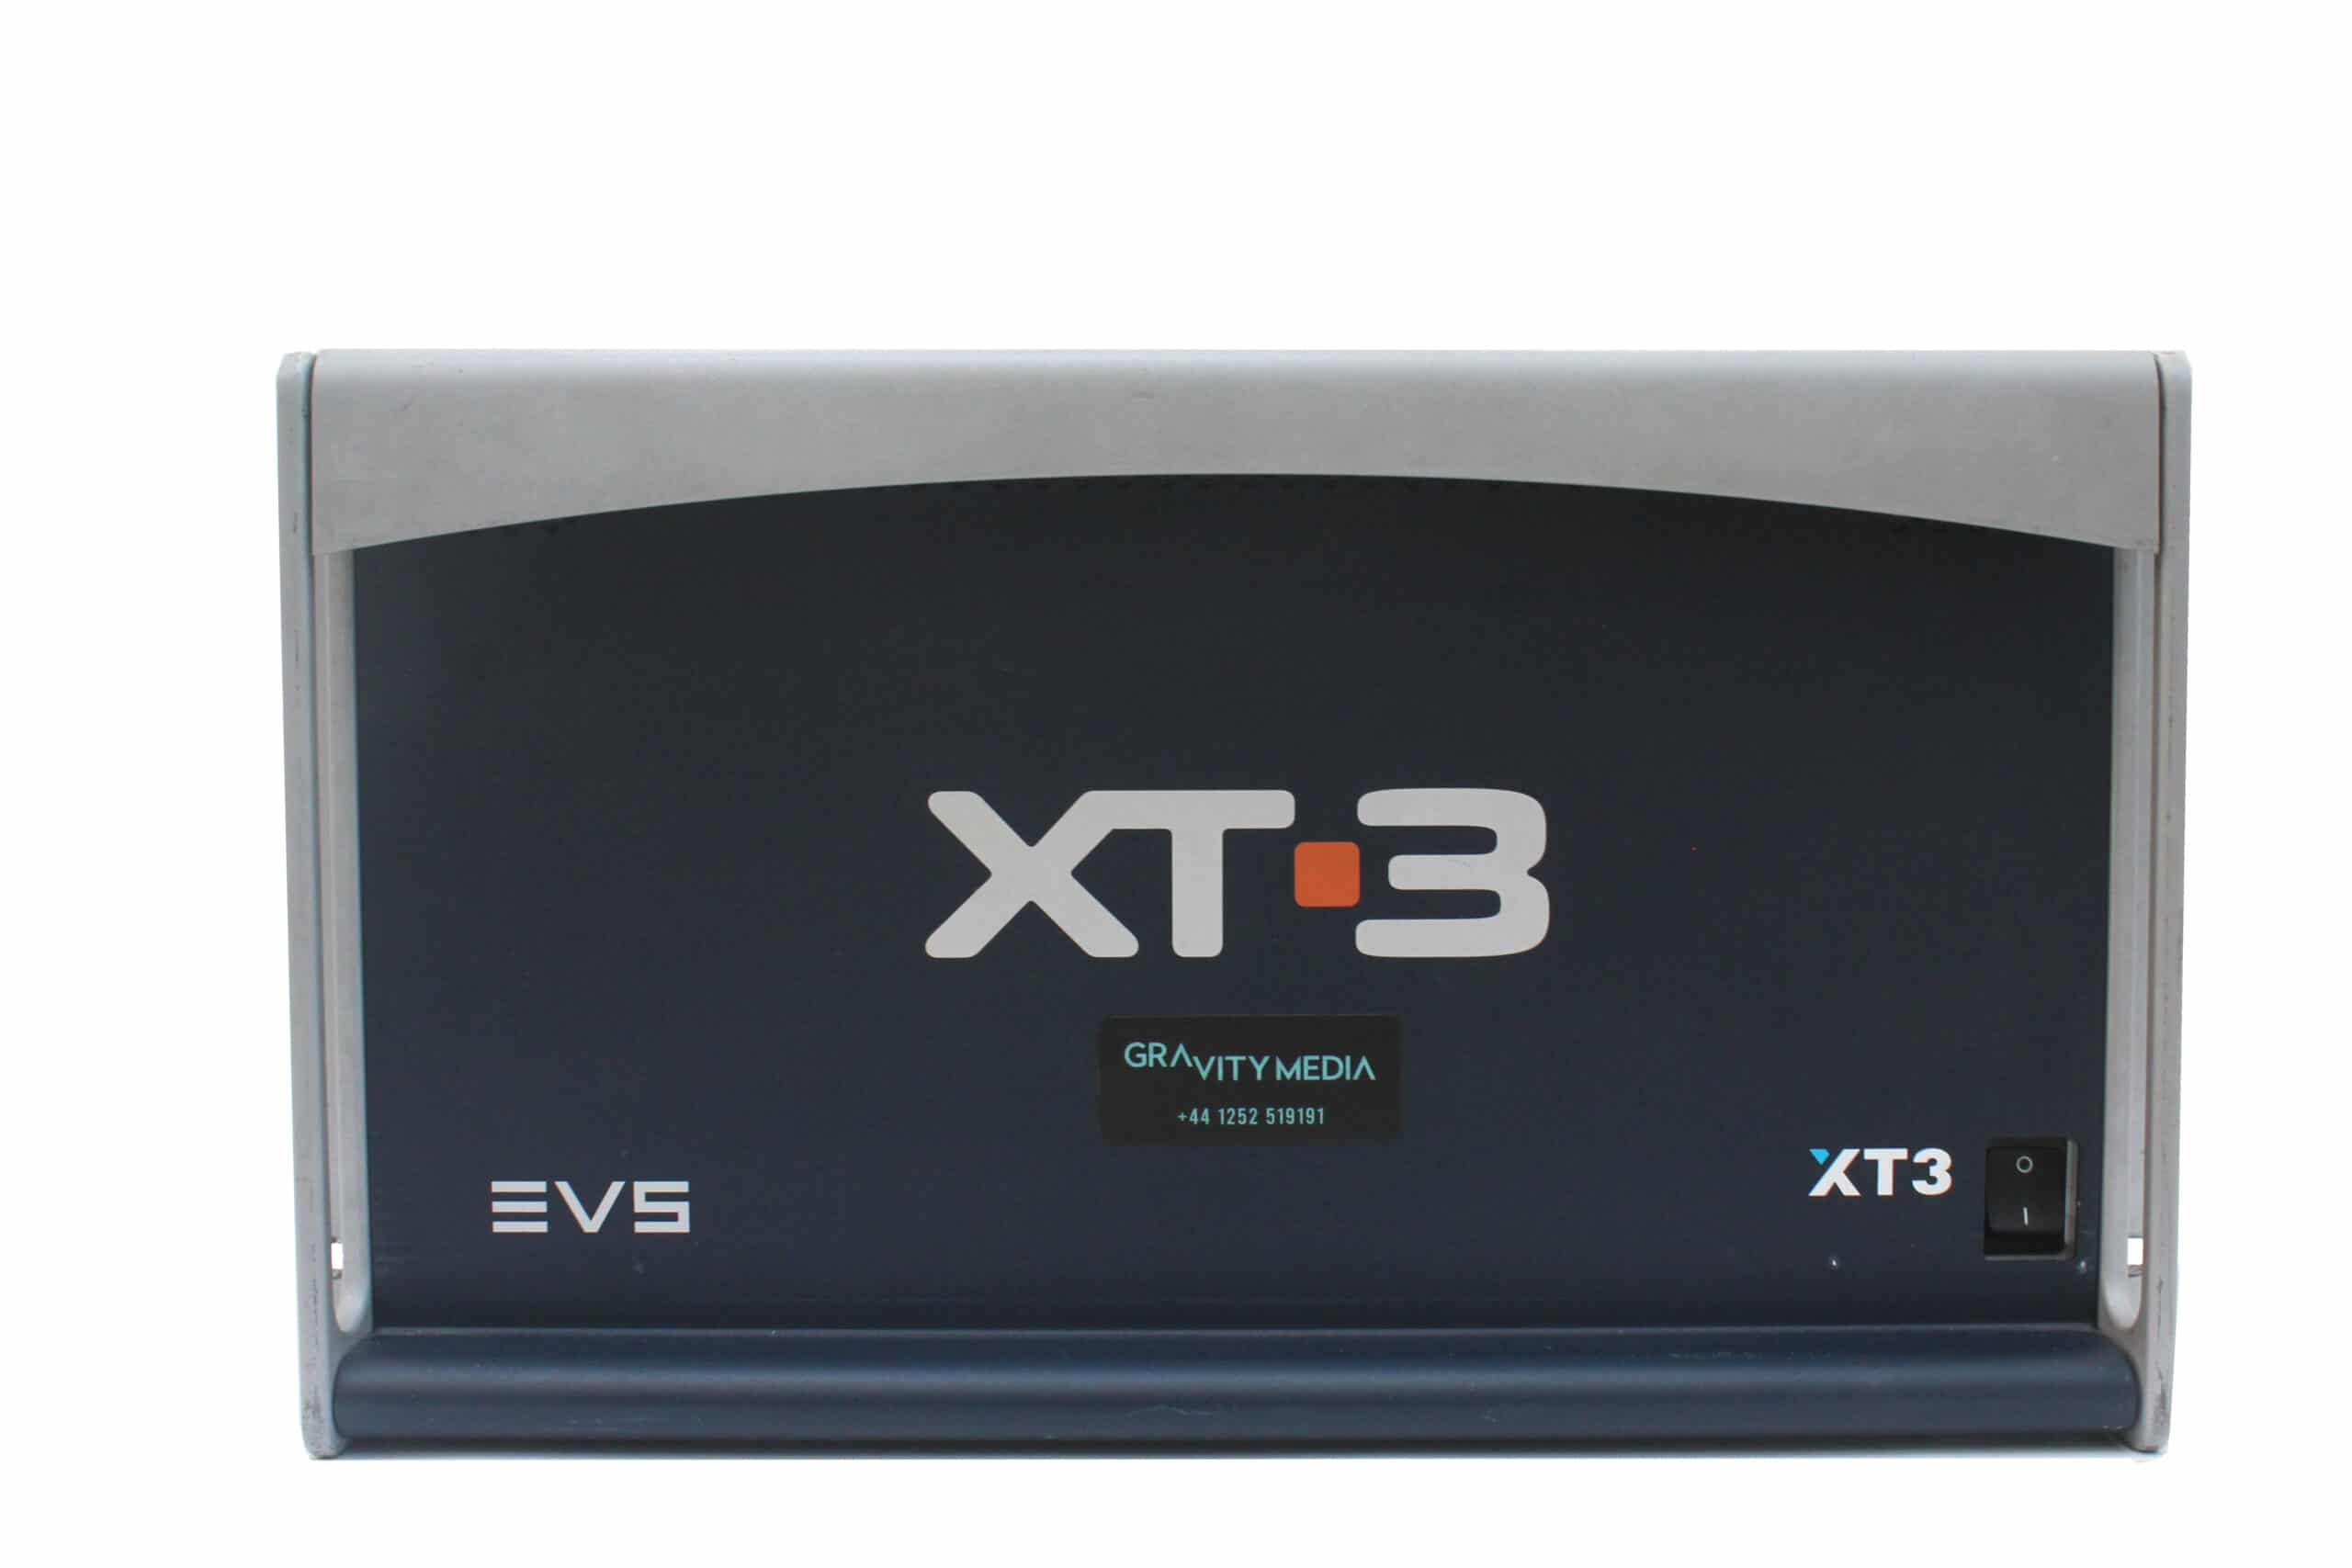 EVS (HD) XT3 Broadcast Server